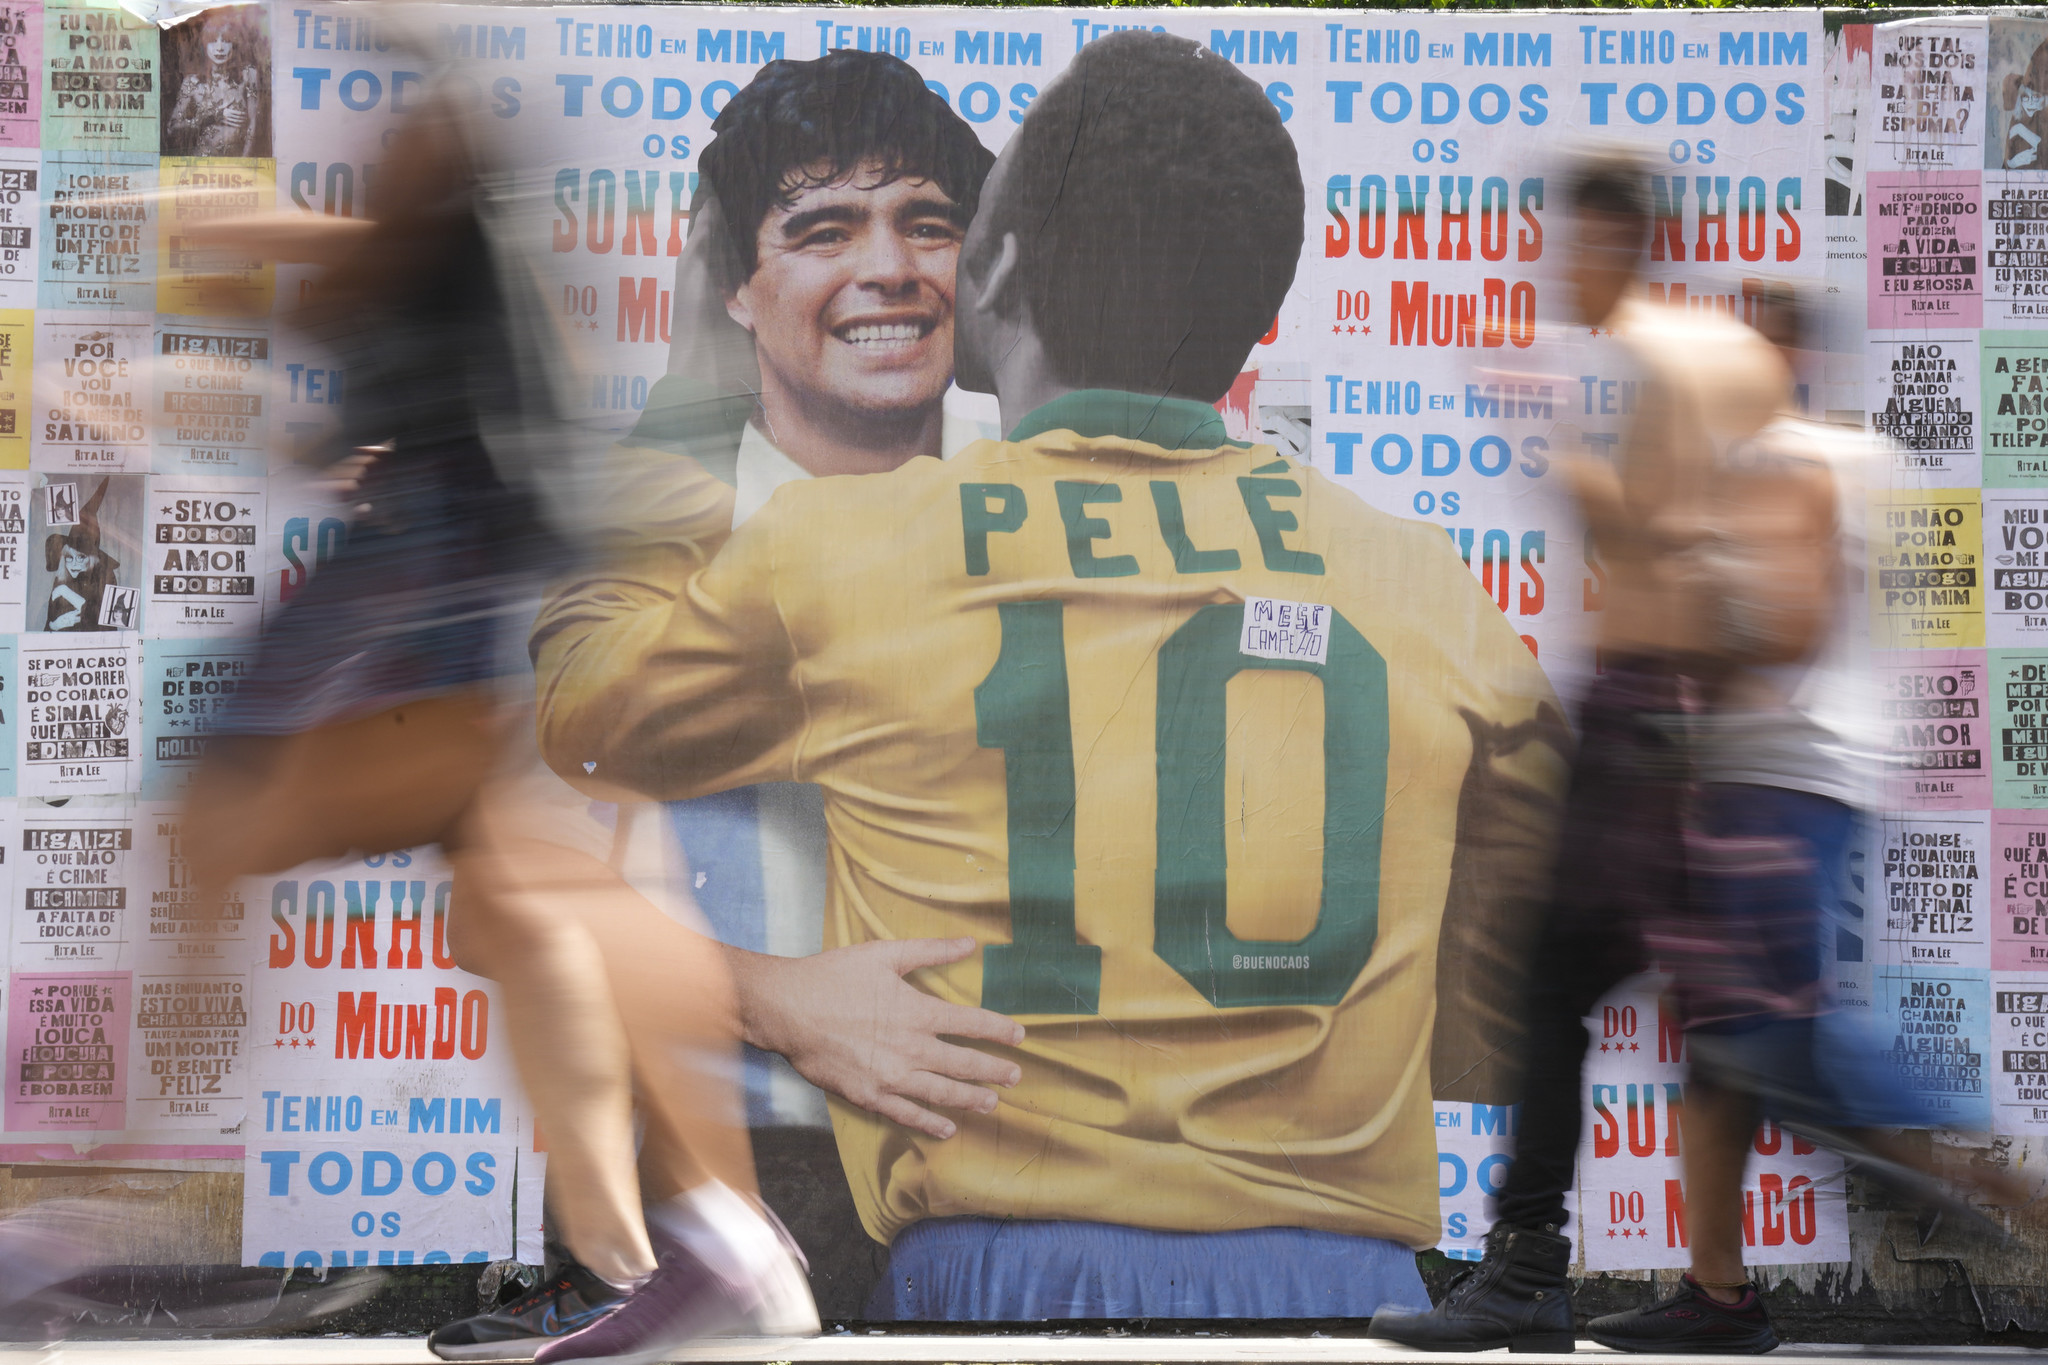 Pele e Maradona  Pelé, Diego maradona, Soccer